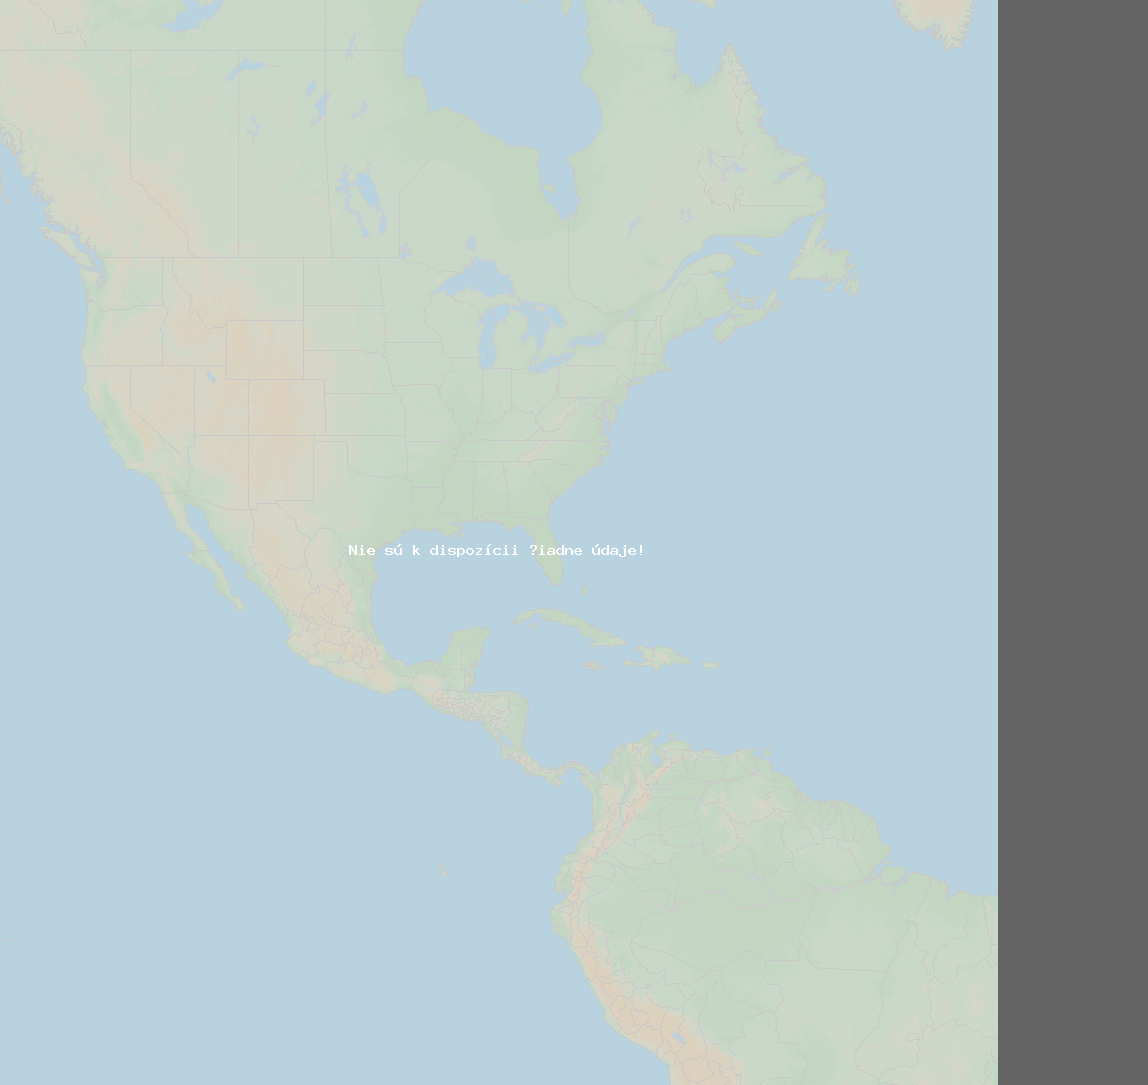 Pomer bleskov (Stanica indianapolis) North America 2021 Máj